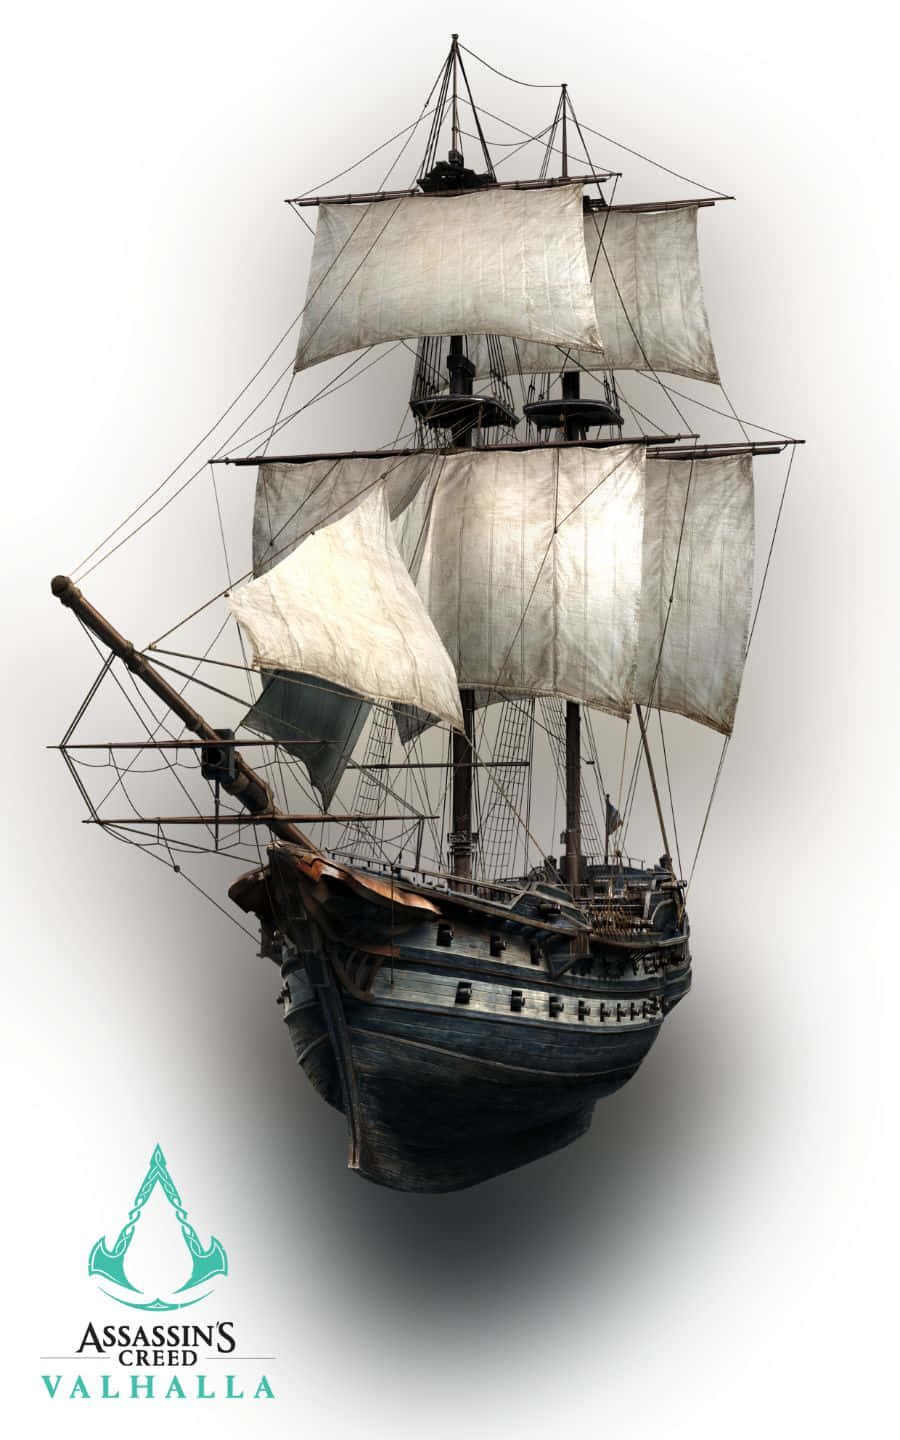 Riesigesschiff 1440p Assassin's Creed Valhalla Hintergrund